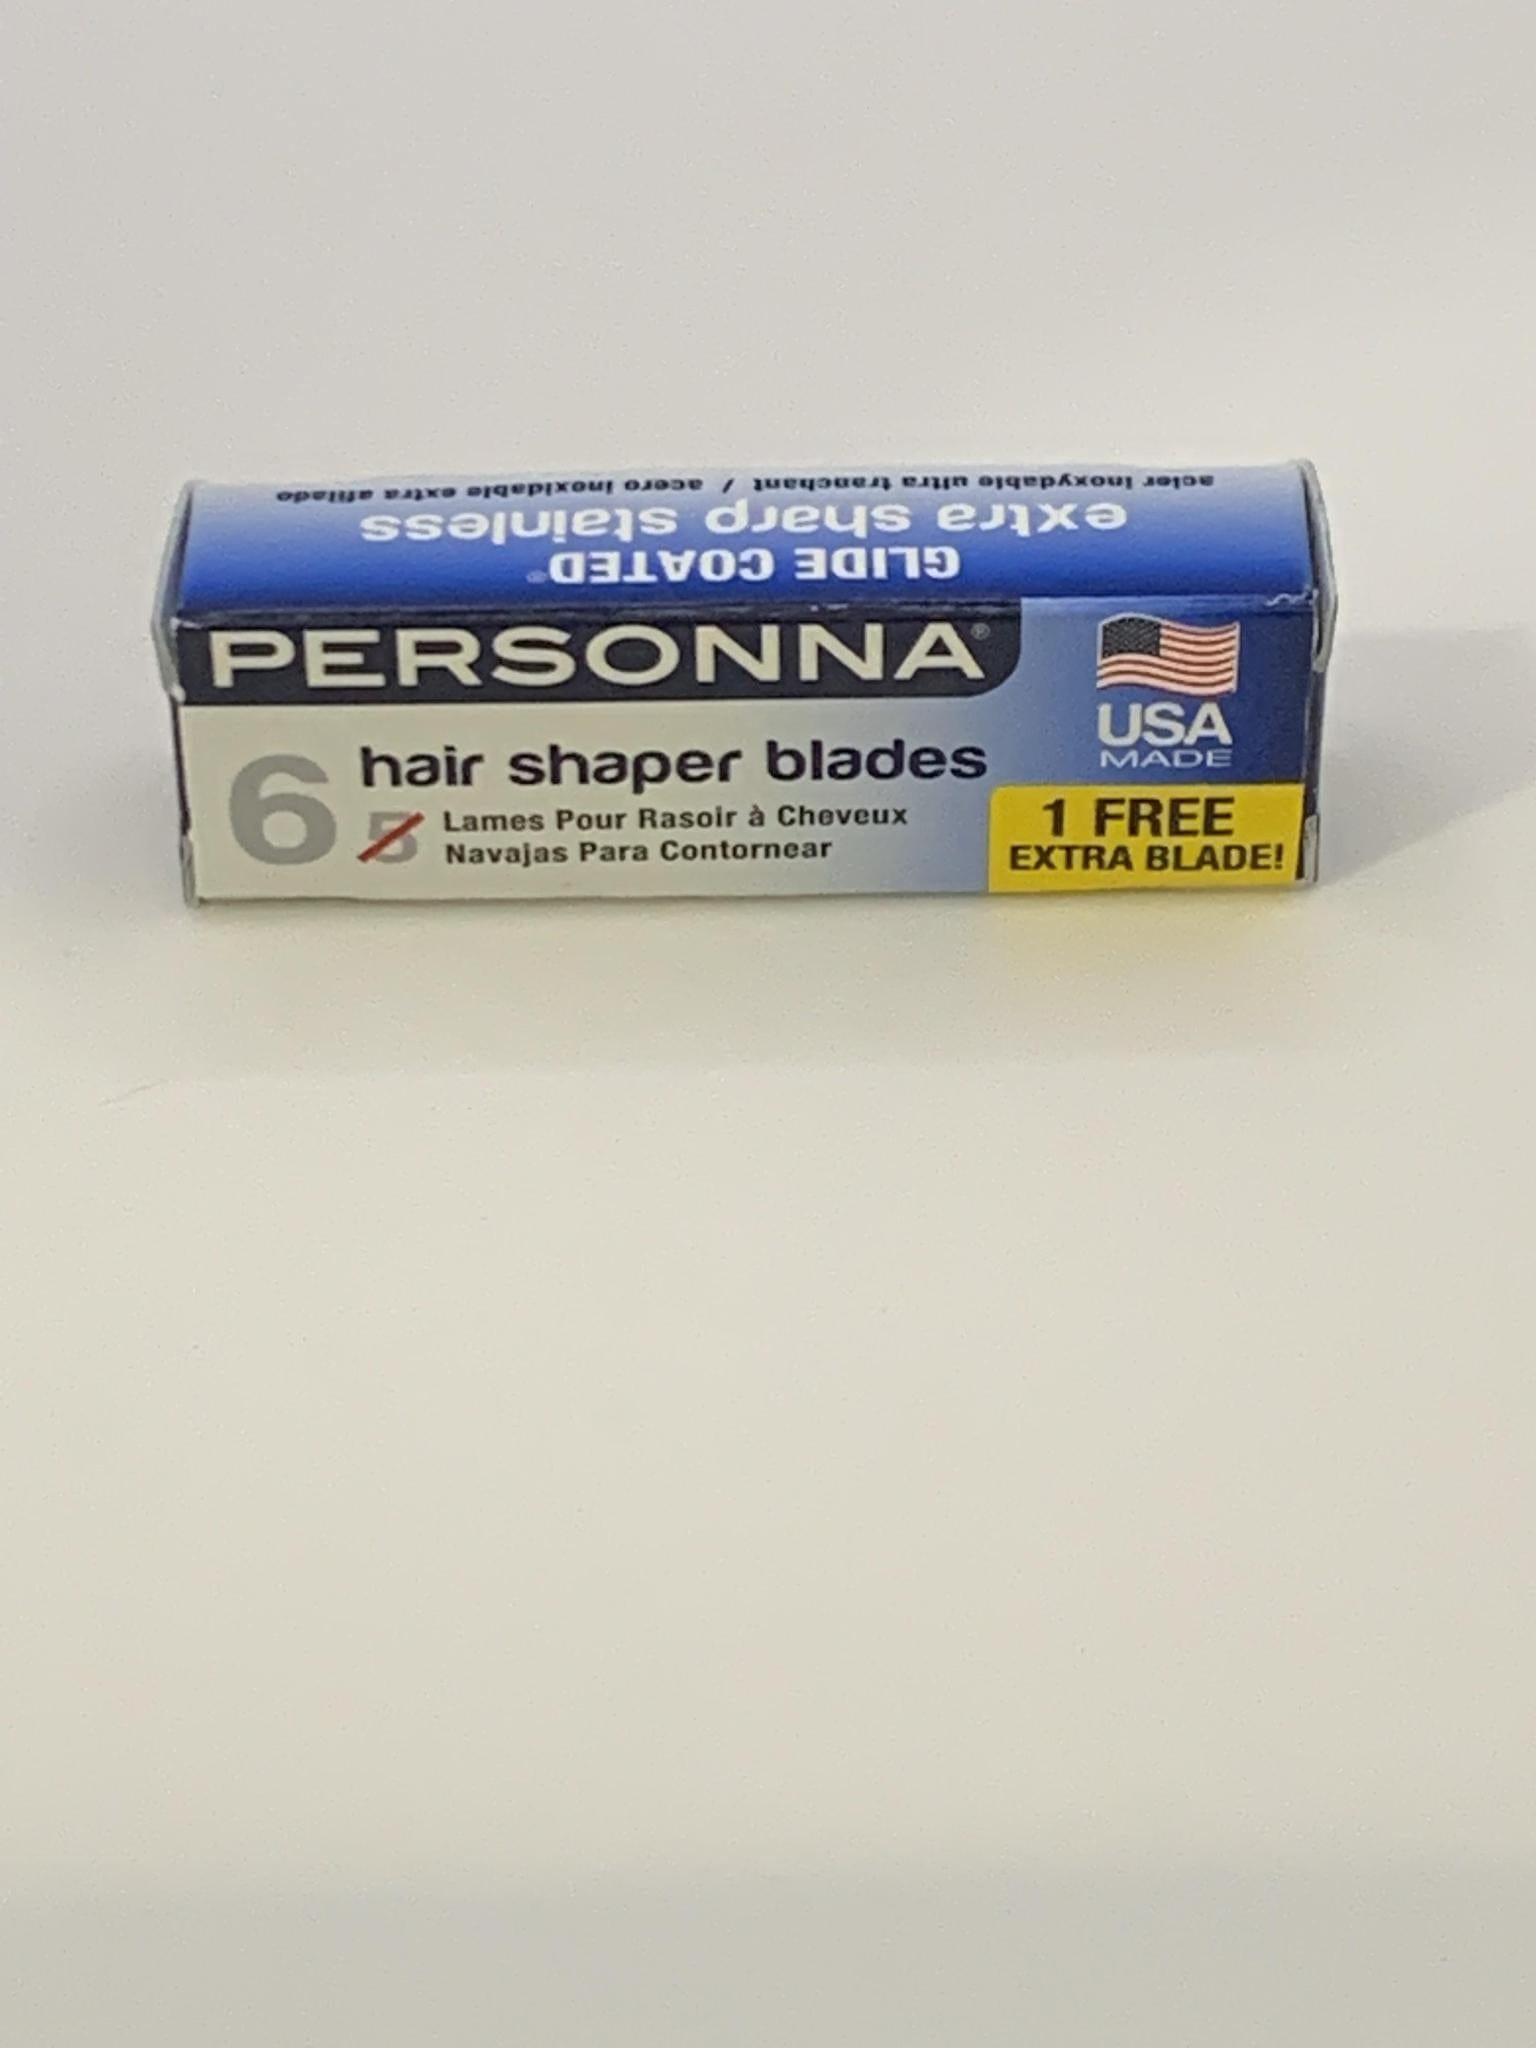 PERSONNA HAIR SHAPER BLADES